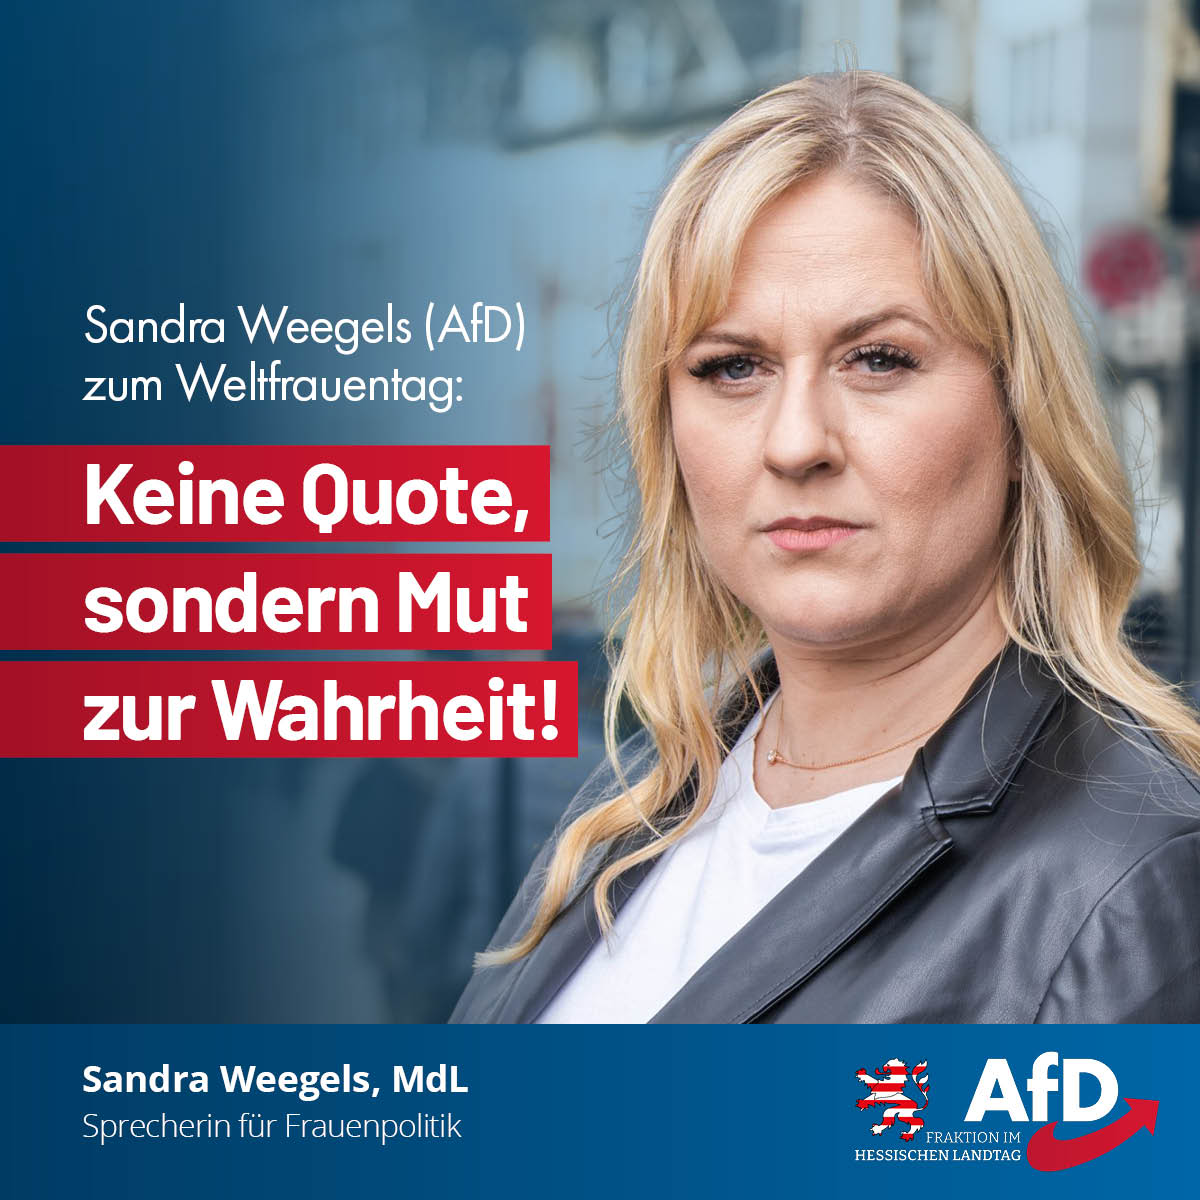 You are currently viewing Sandra Weegels (AfD) zum Weltfrauentag: Keine Quote, sondern Mut zur Wahrheit